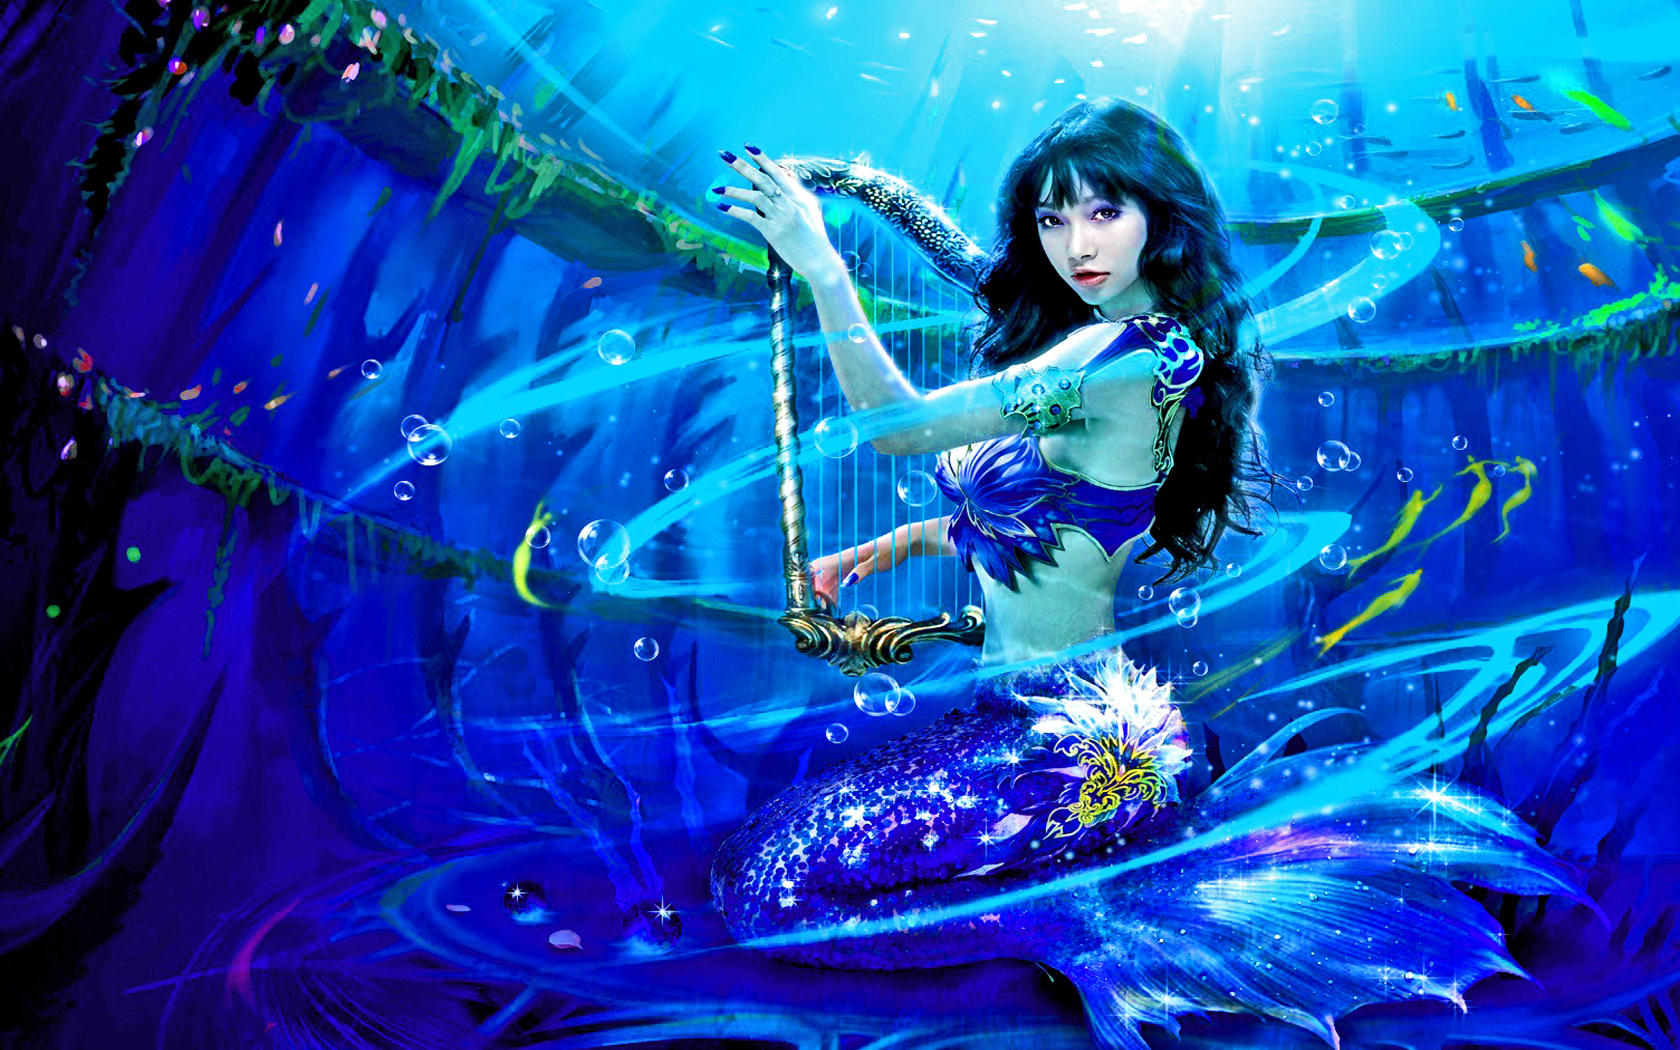 Mermaid Fantasy Art Wallpaper